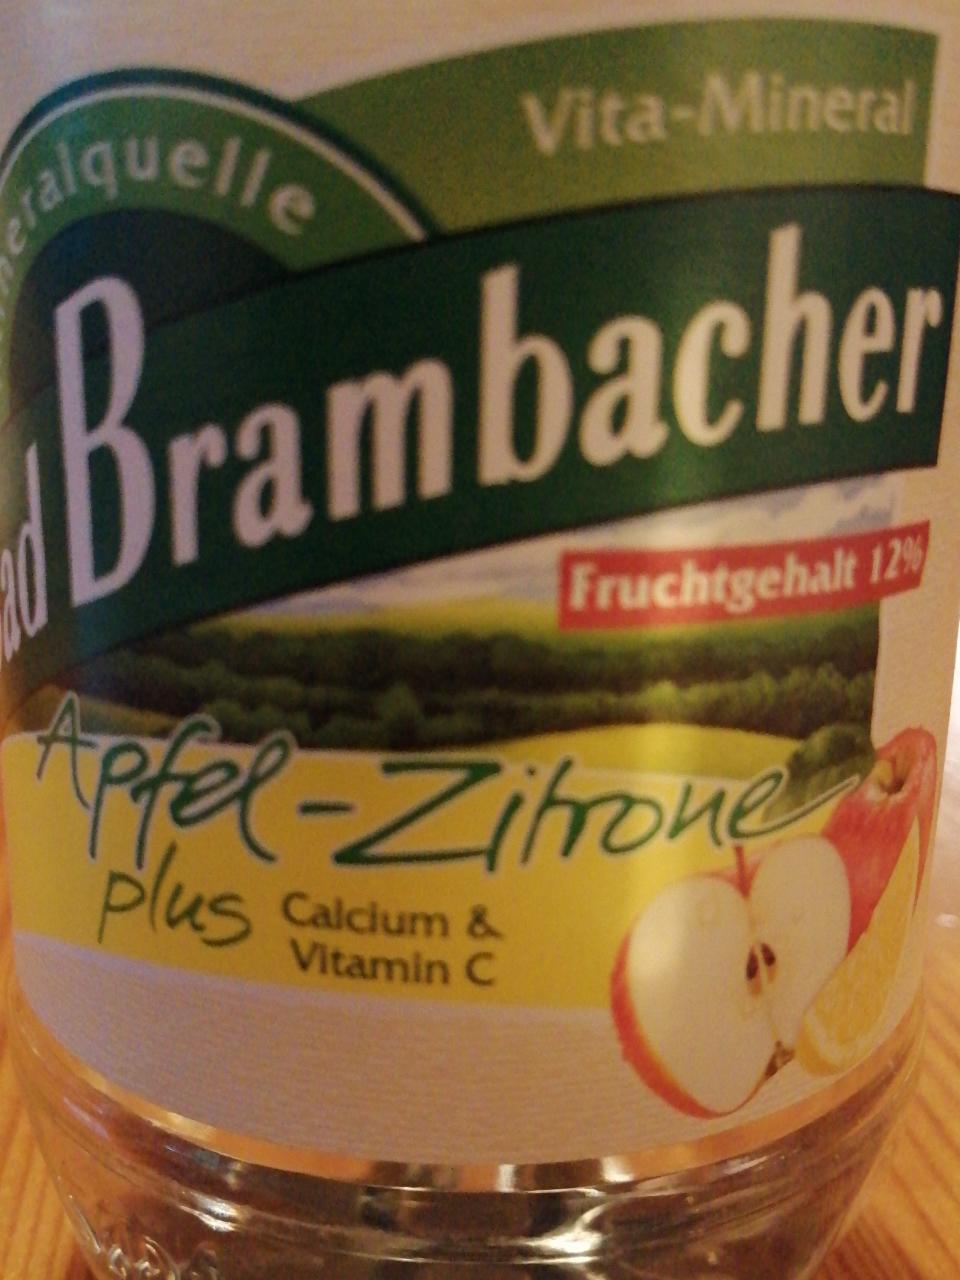 Fotografie - Apfel-Zitrone plus Calcium & Vitamin C Bad Brambacher